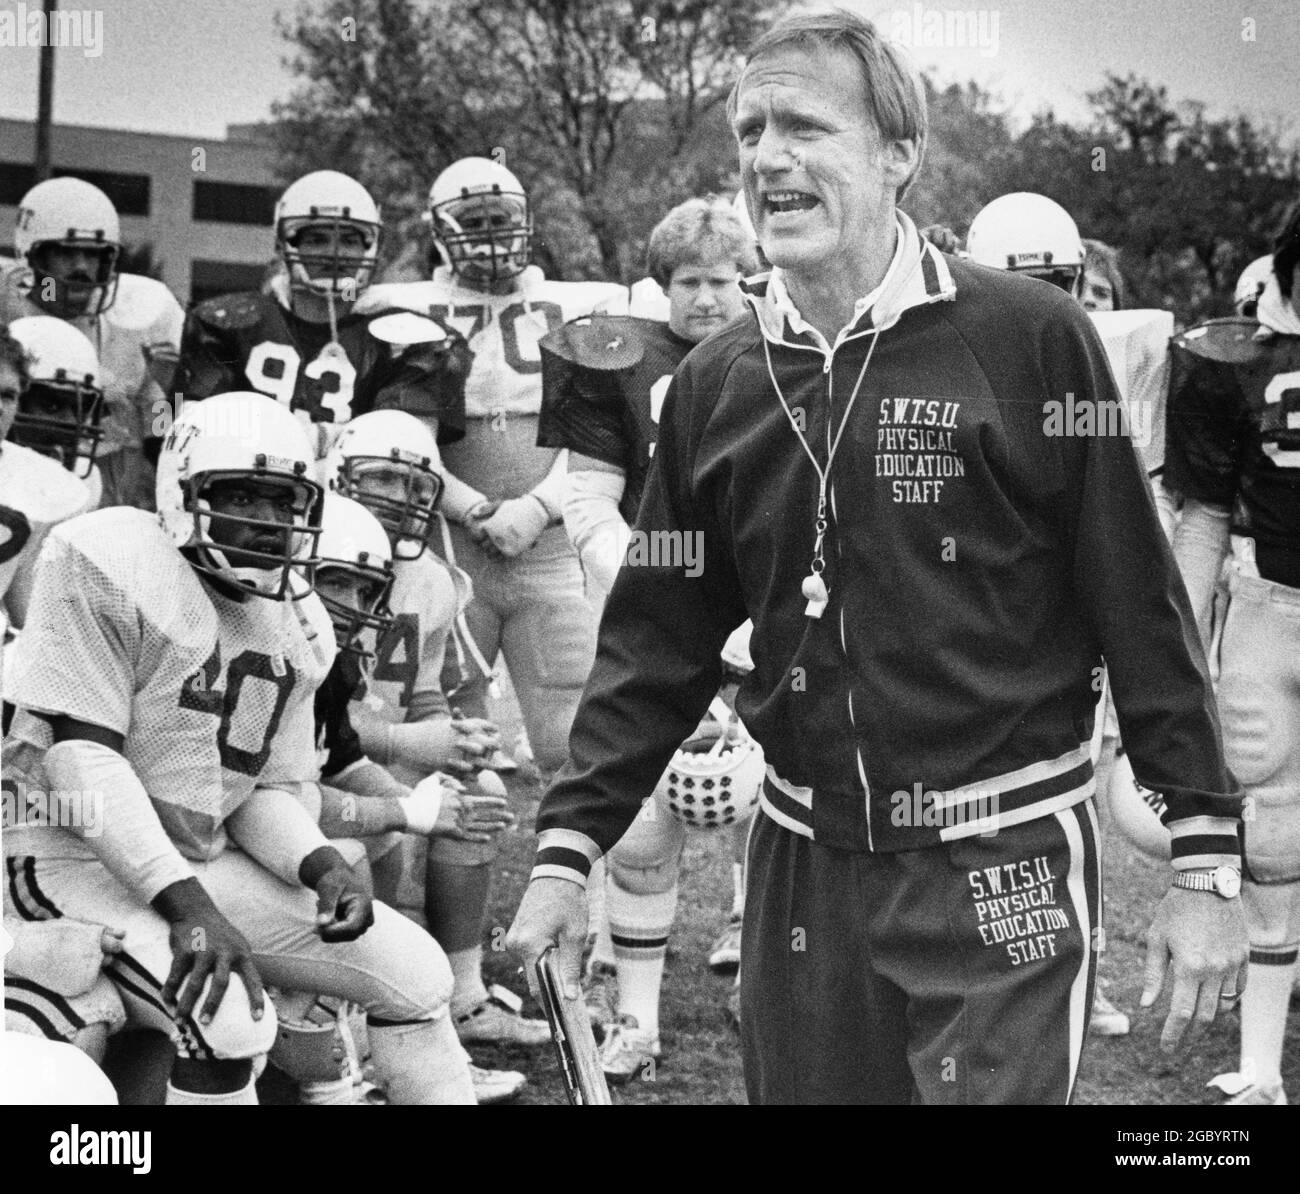 San Marcos Texas USA, um 1982: Fußballtrainer Jim Wacker von der Southwest Texas State University ruft seinen Spielern während des Trainings Anweisungen zu. ©Bob Daemmrich Stockfoto